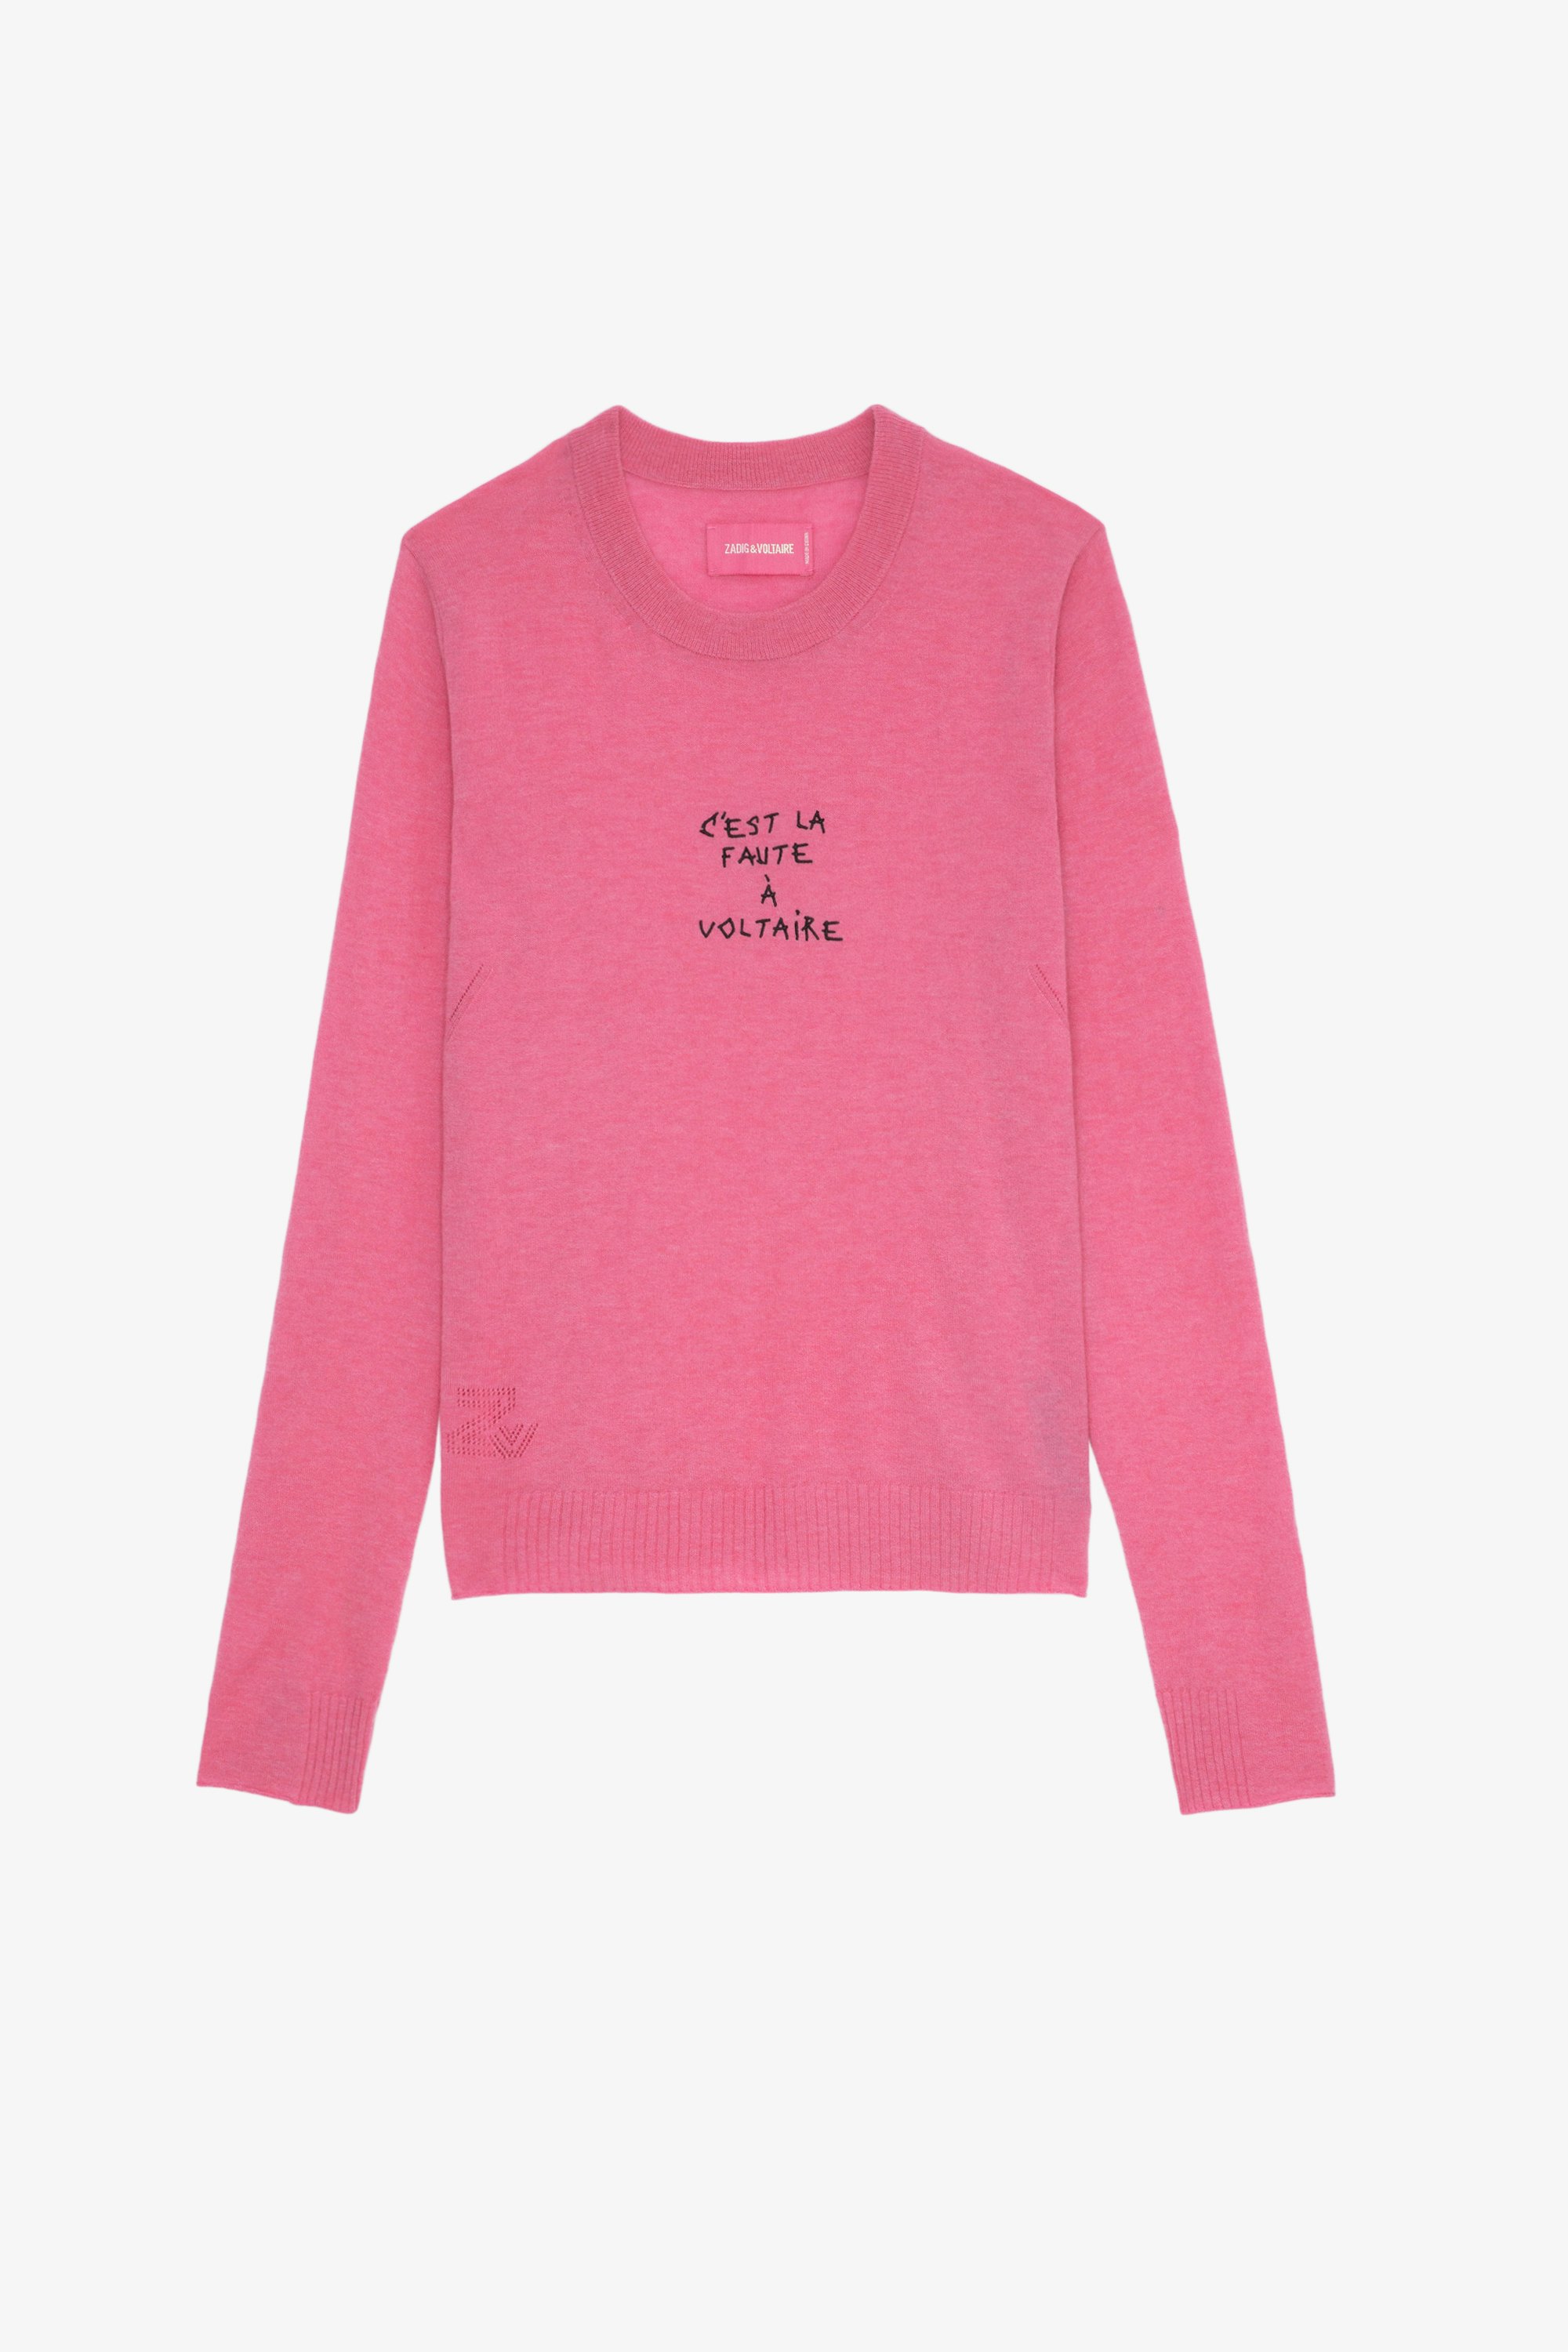 Miss Cashmere Jumper Women’s pink feather cashmere jumper with “C’est la faute à Voltaire” embroidery.